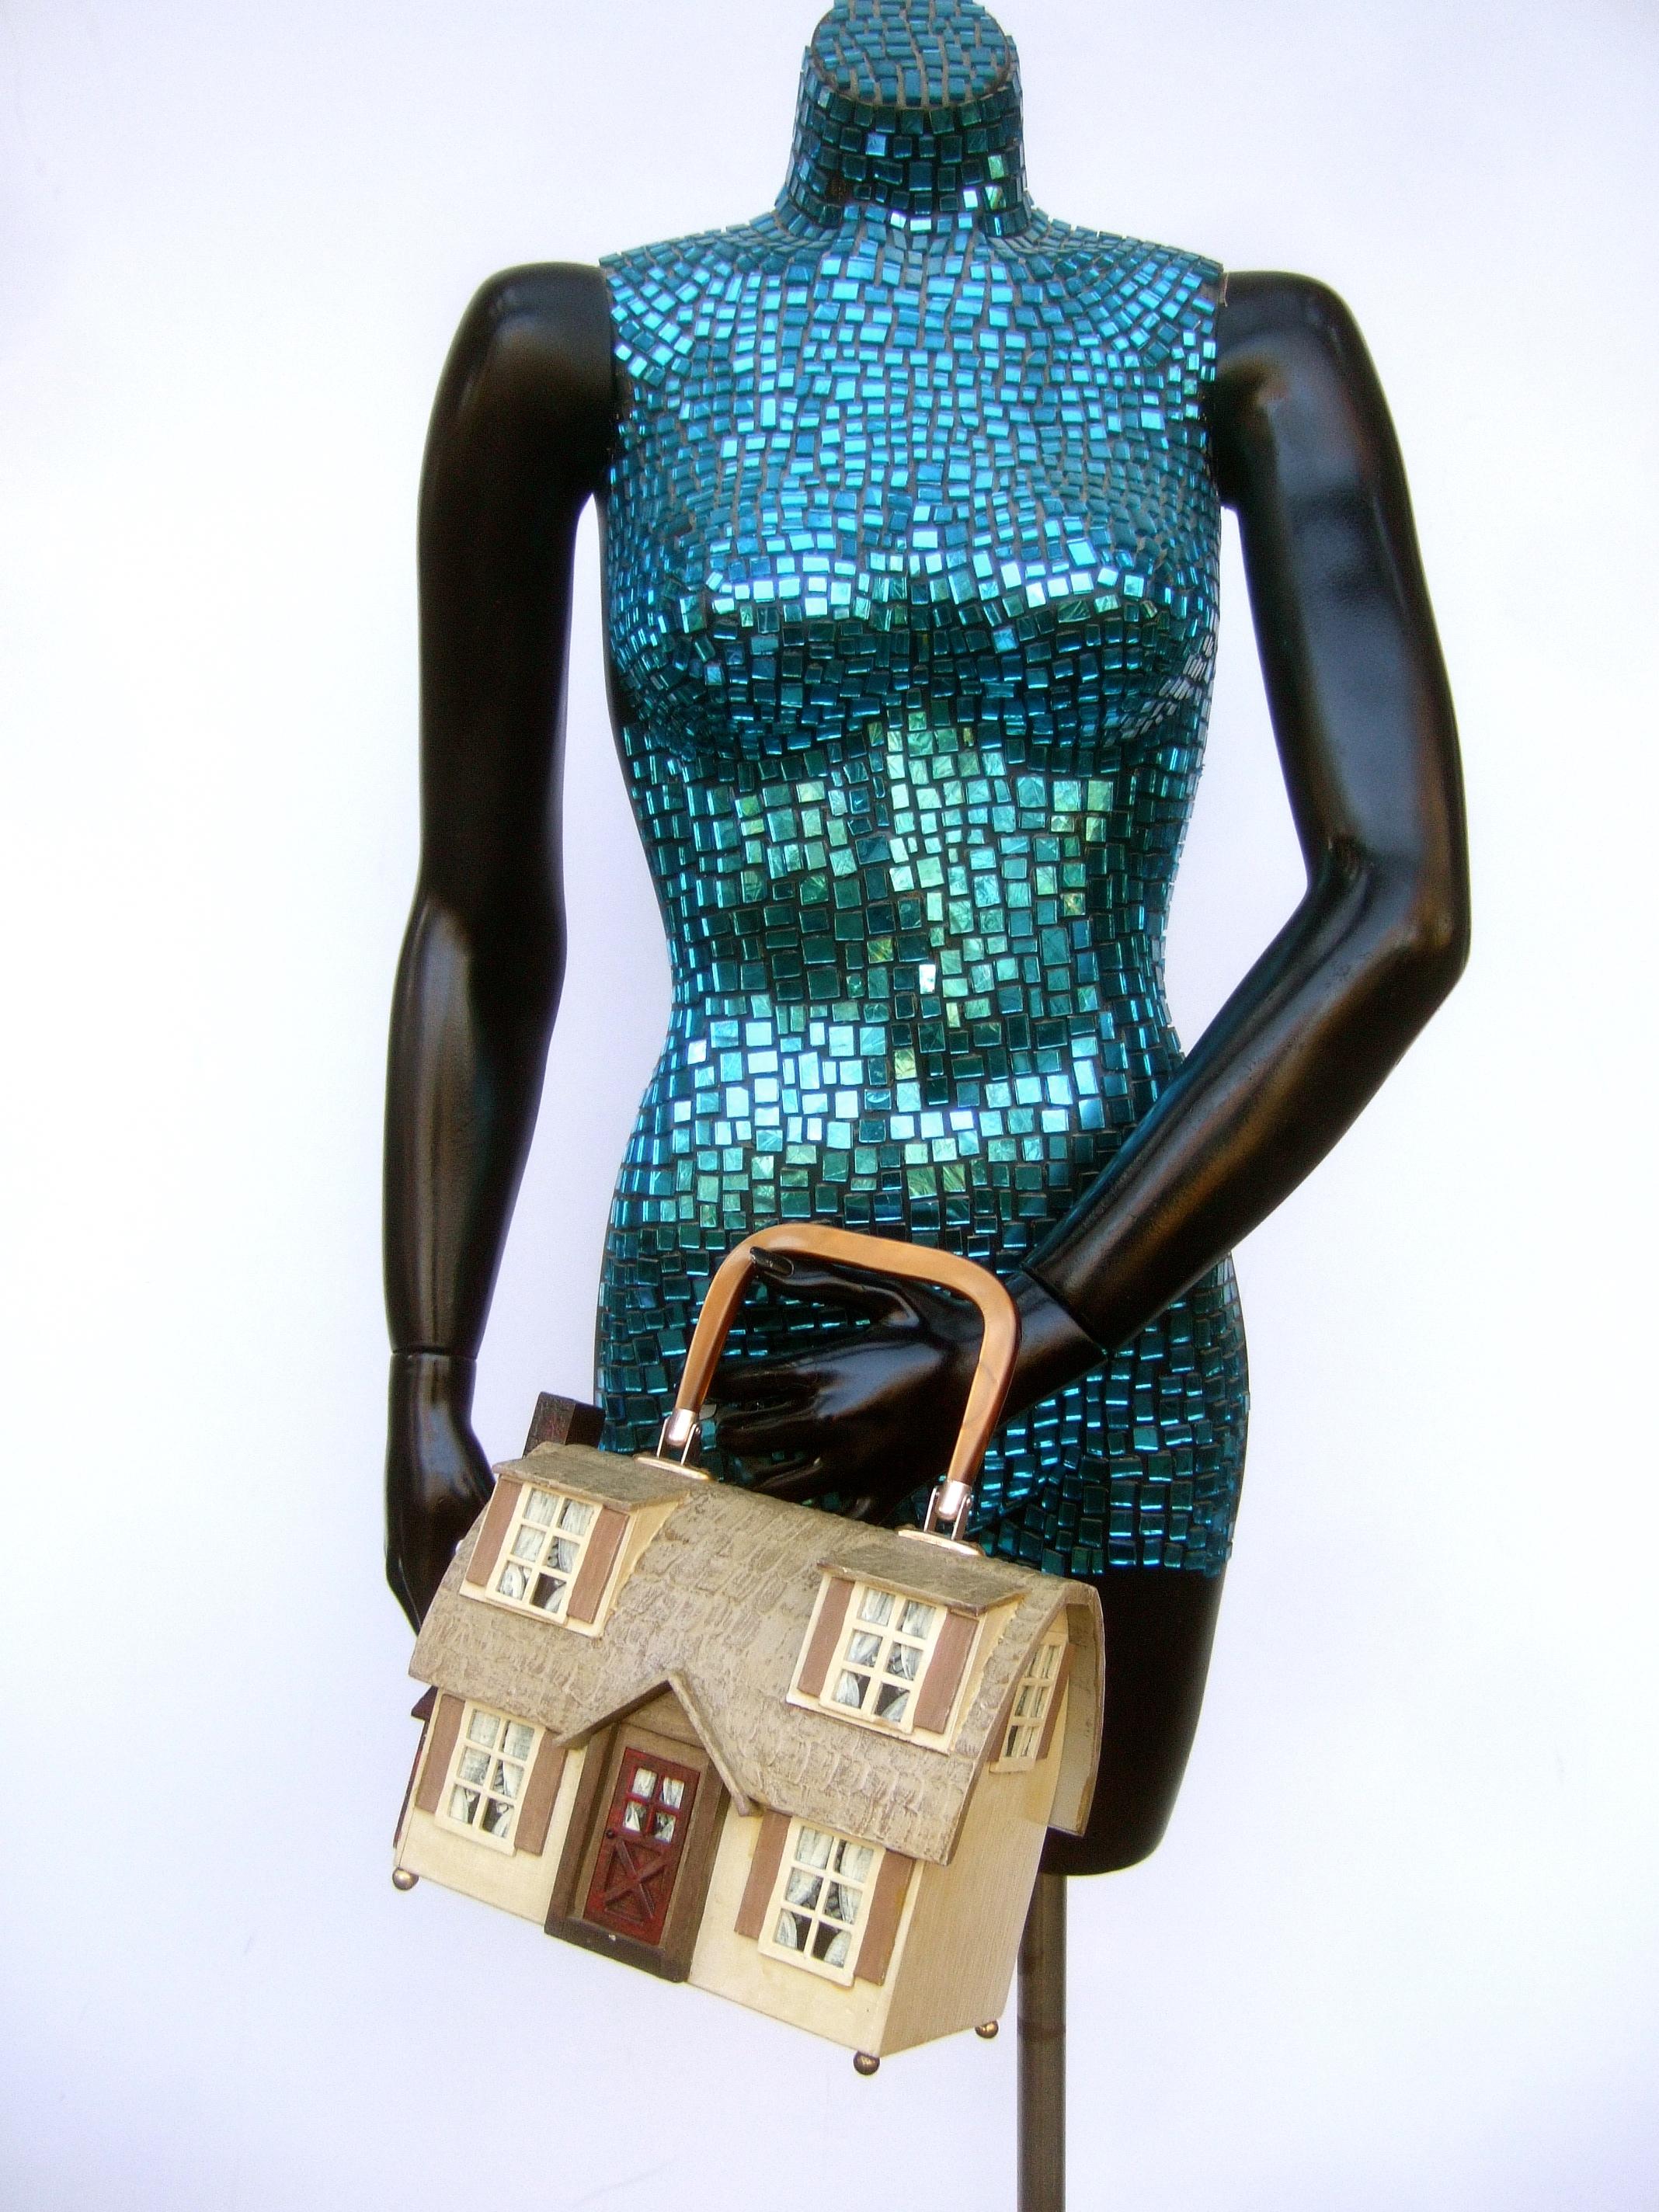 Women's Whimsical Wood Enamel Handmade Artisan House Design Handbag c 1970s